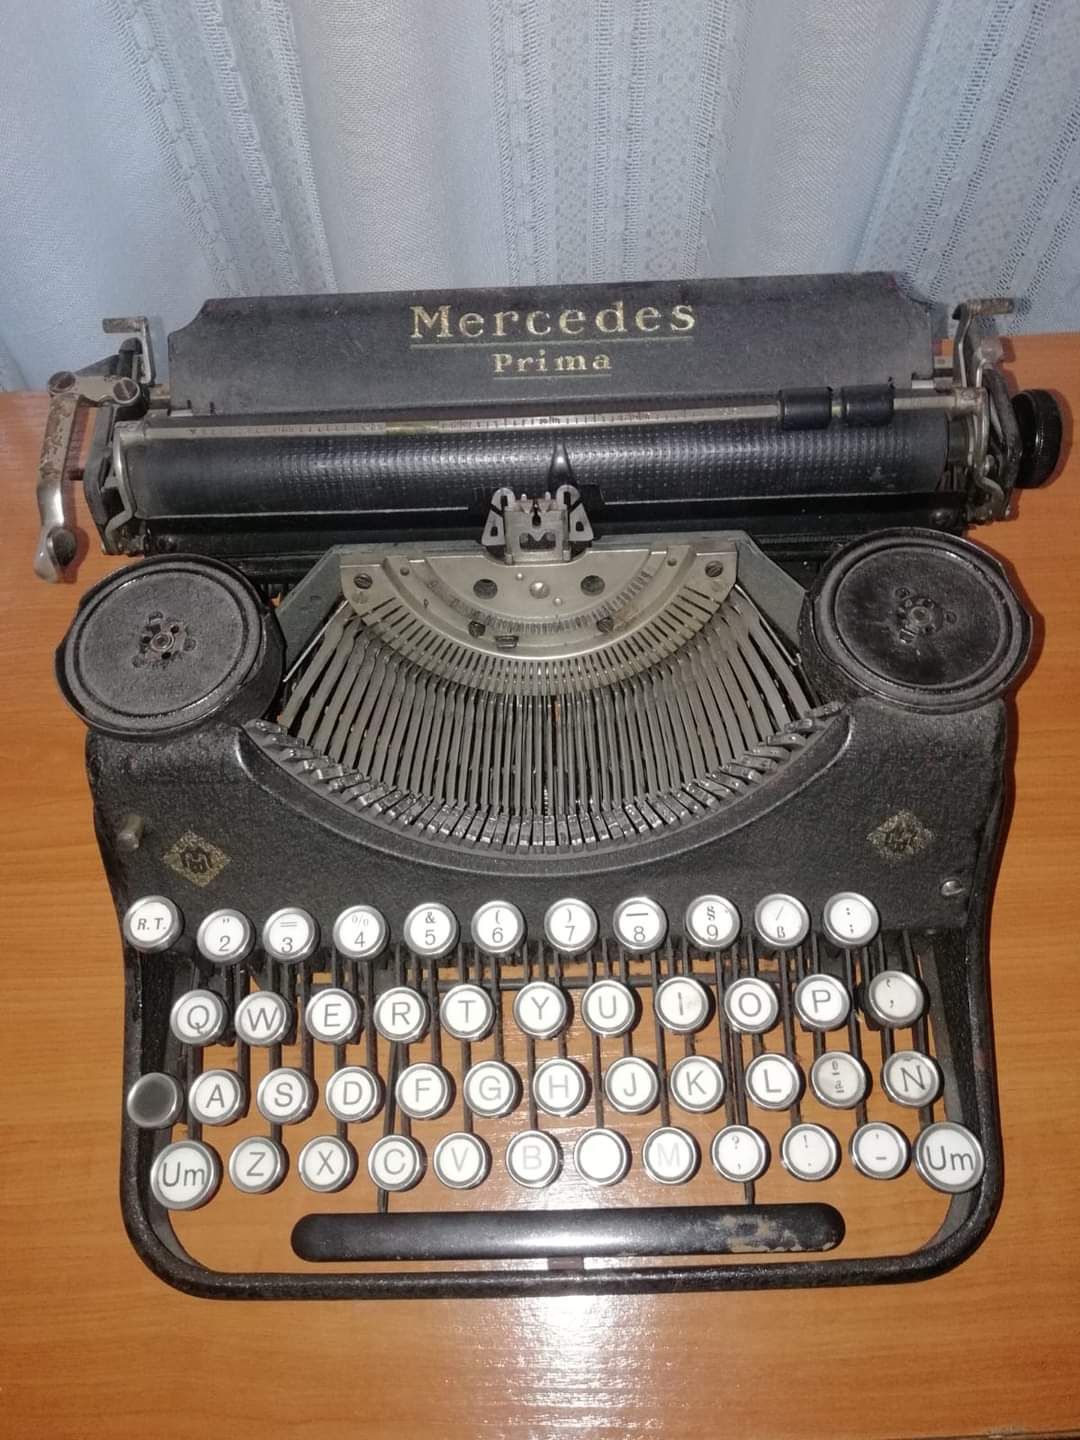 Máquina de escribir de la 109 BM Mercedes Prima.jpg